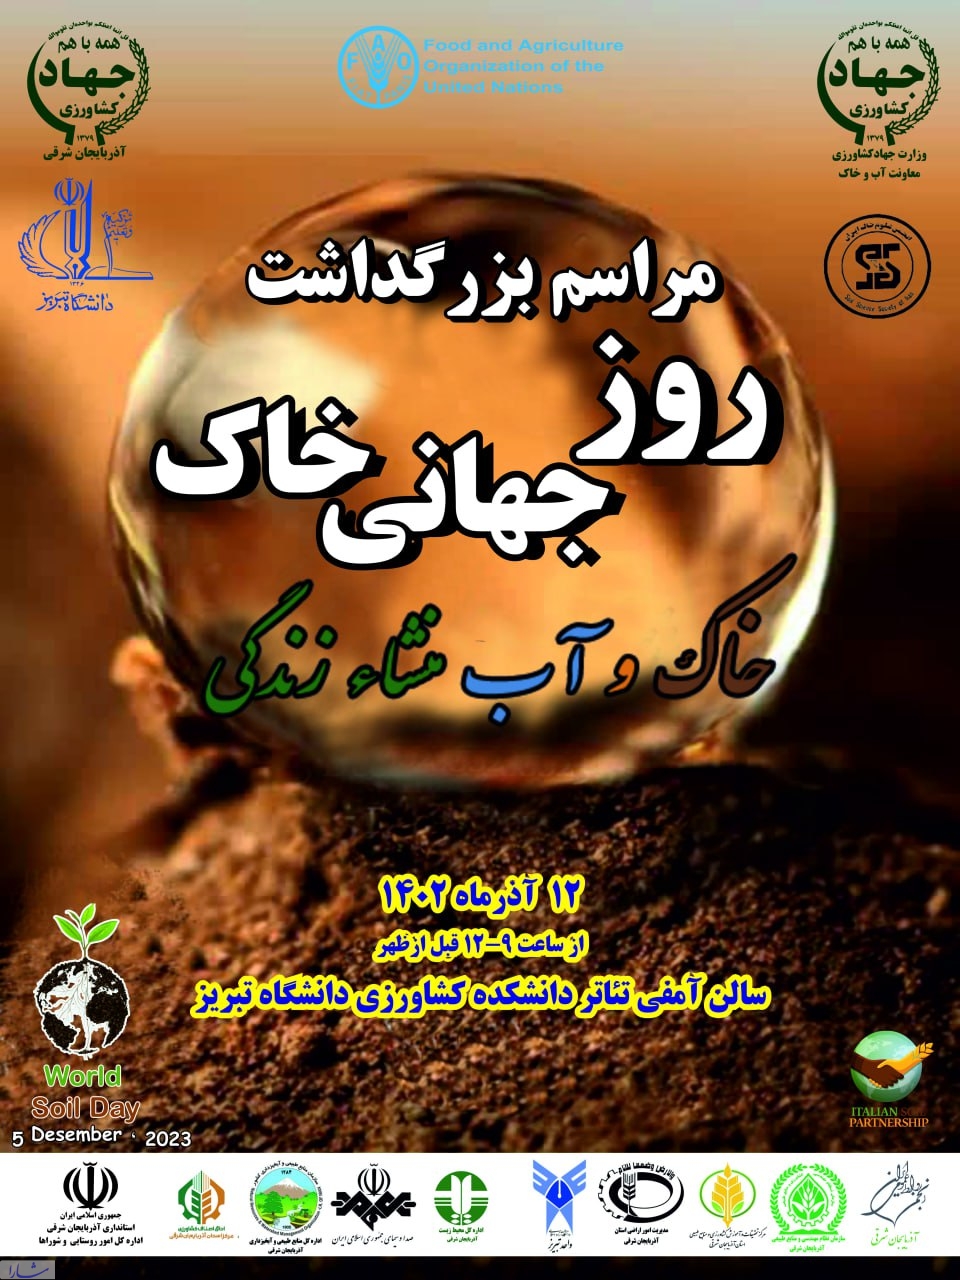 مراسم گرامیداشت روز جهانی خاک، ۱۲ آذر با شعار "خاک و آب، منشا زندگی" در تبریز برگزار می‌شود